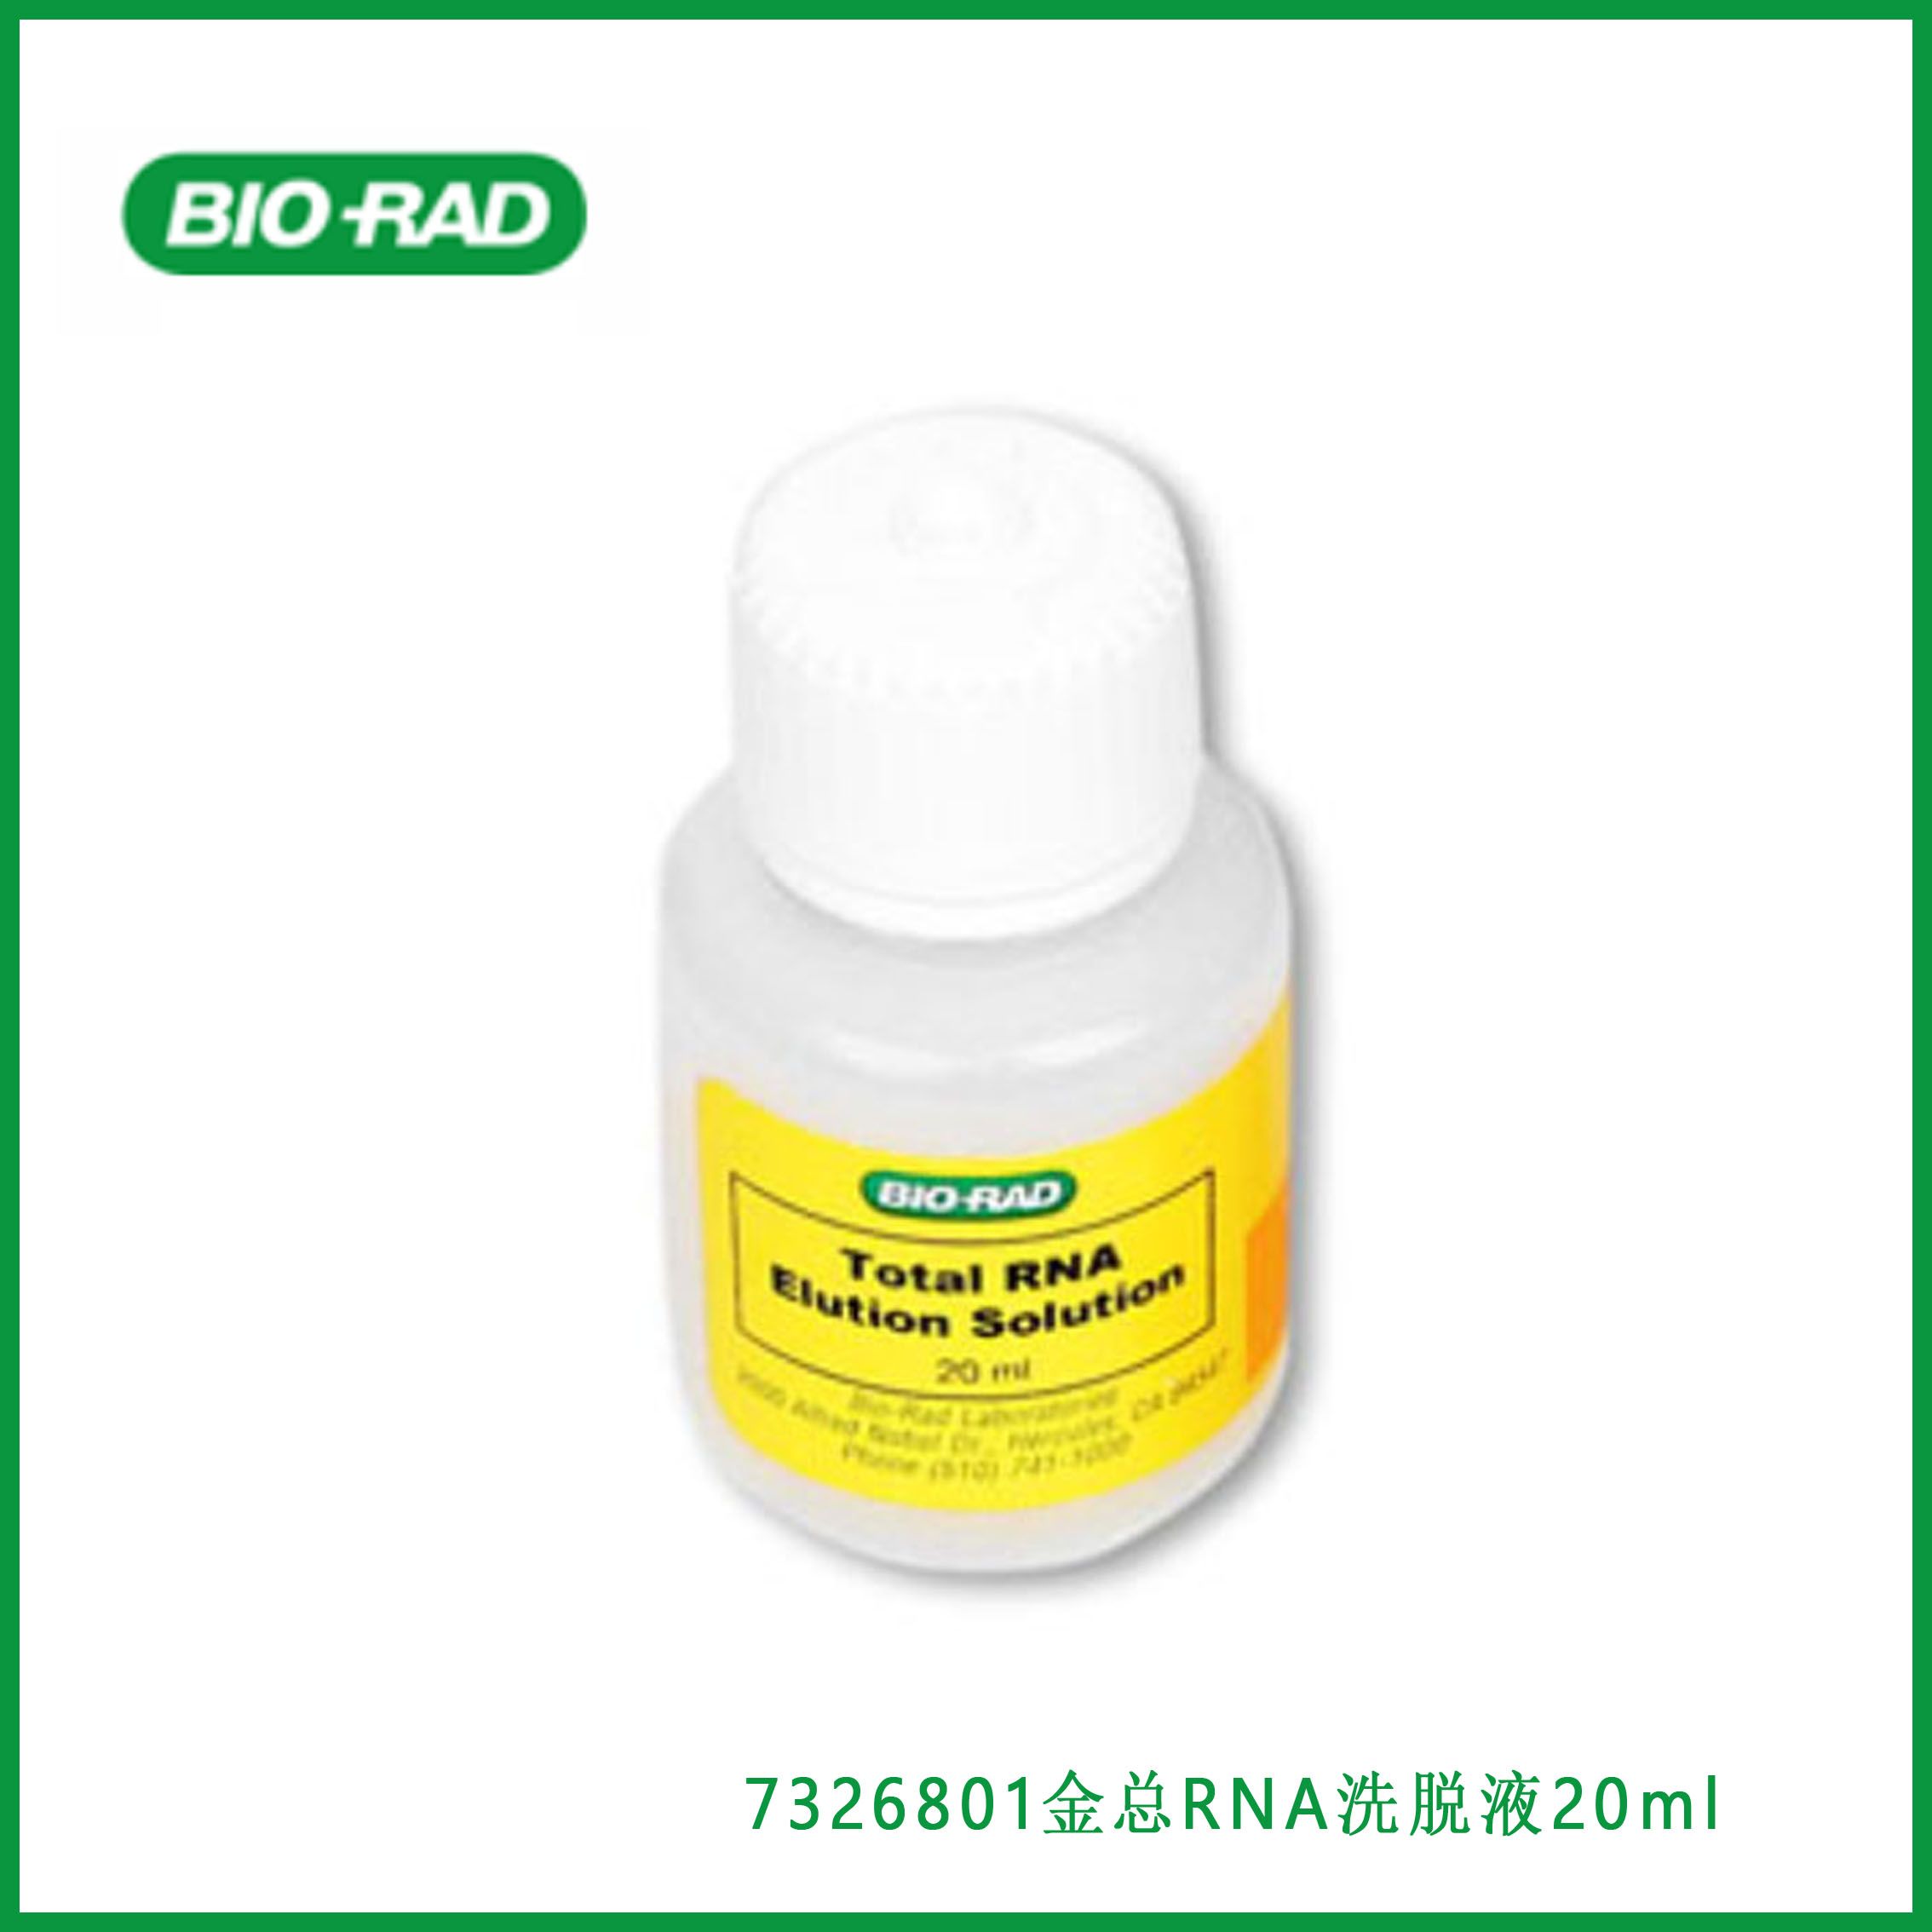 伯乐Bio-rad 7326801 Aurum Total RNA Elution Solution, RNase-free, 20 ml金总RNA洗脱液，无RNase，20毫升,现货